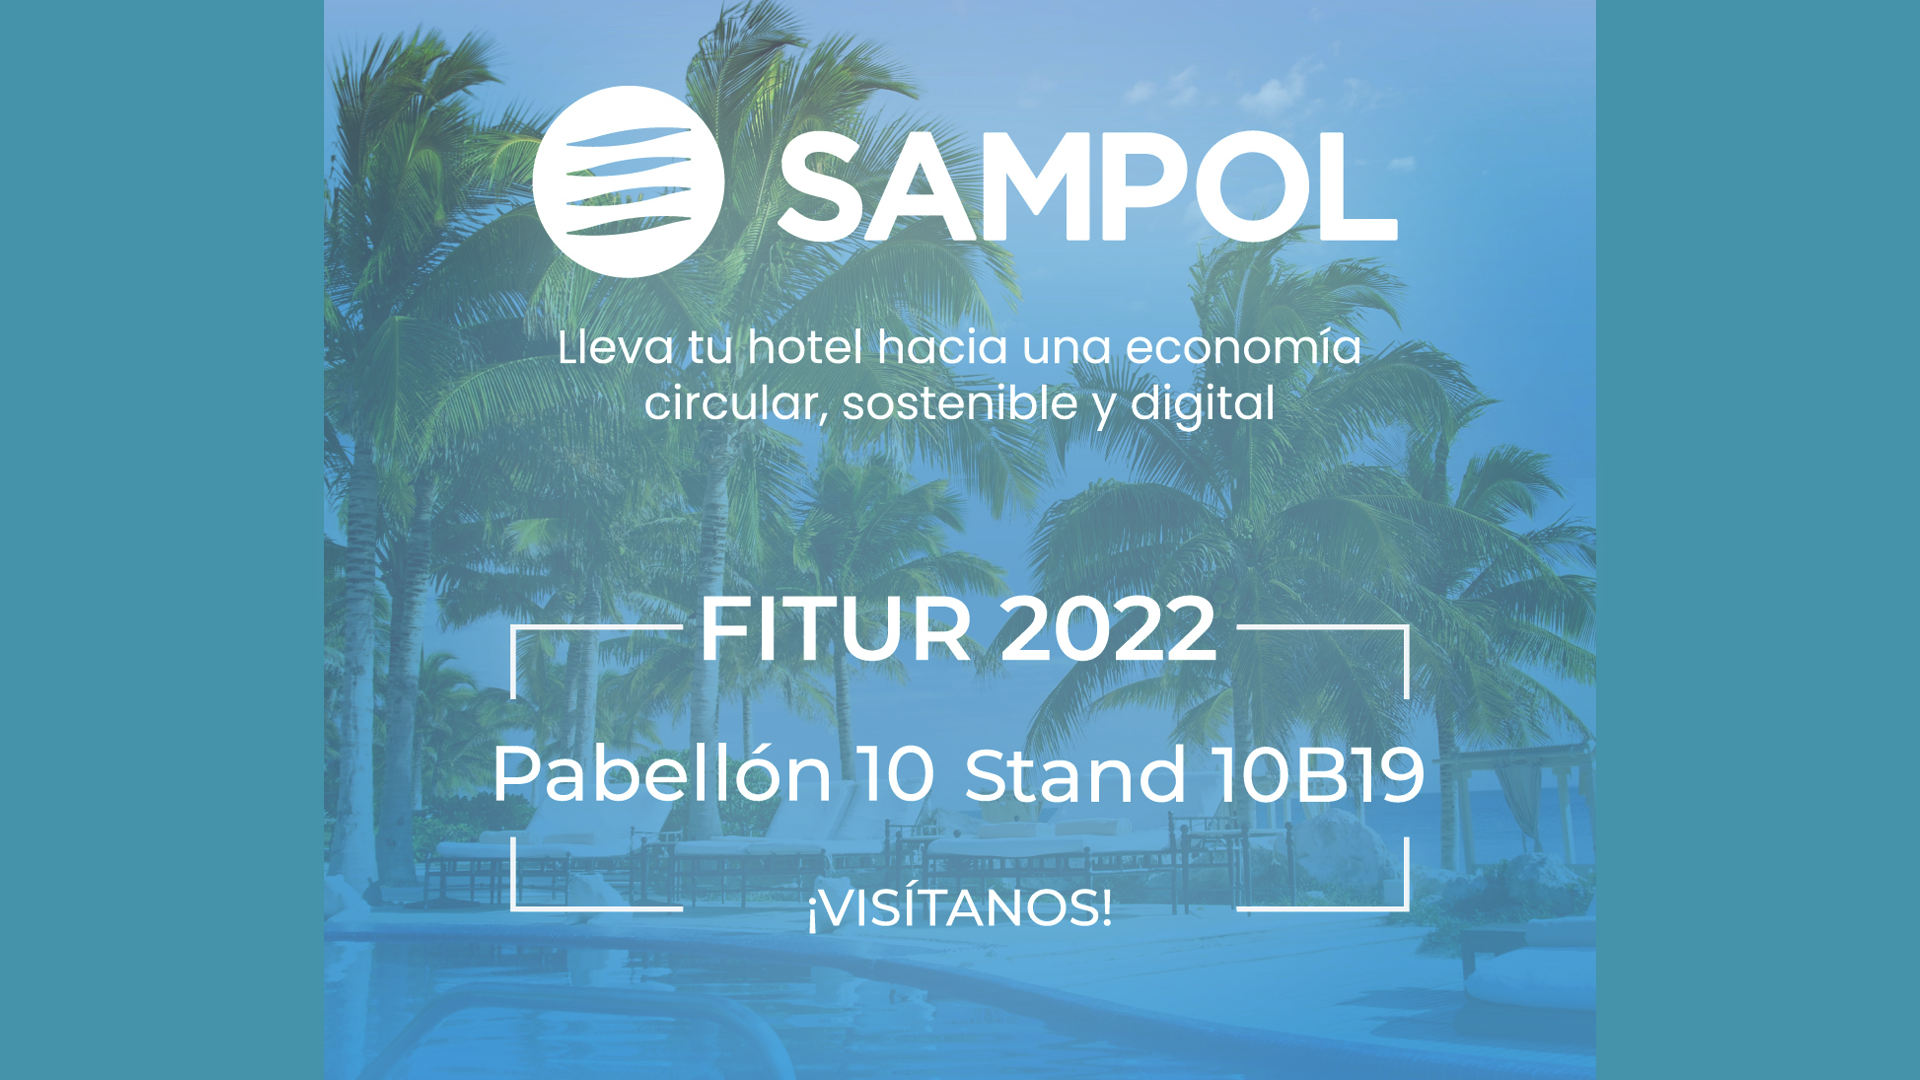 SAMPOL presenta en Fitur 2022 su innovador enfoque de Economía Circular para la industria hotelera